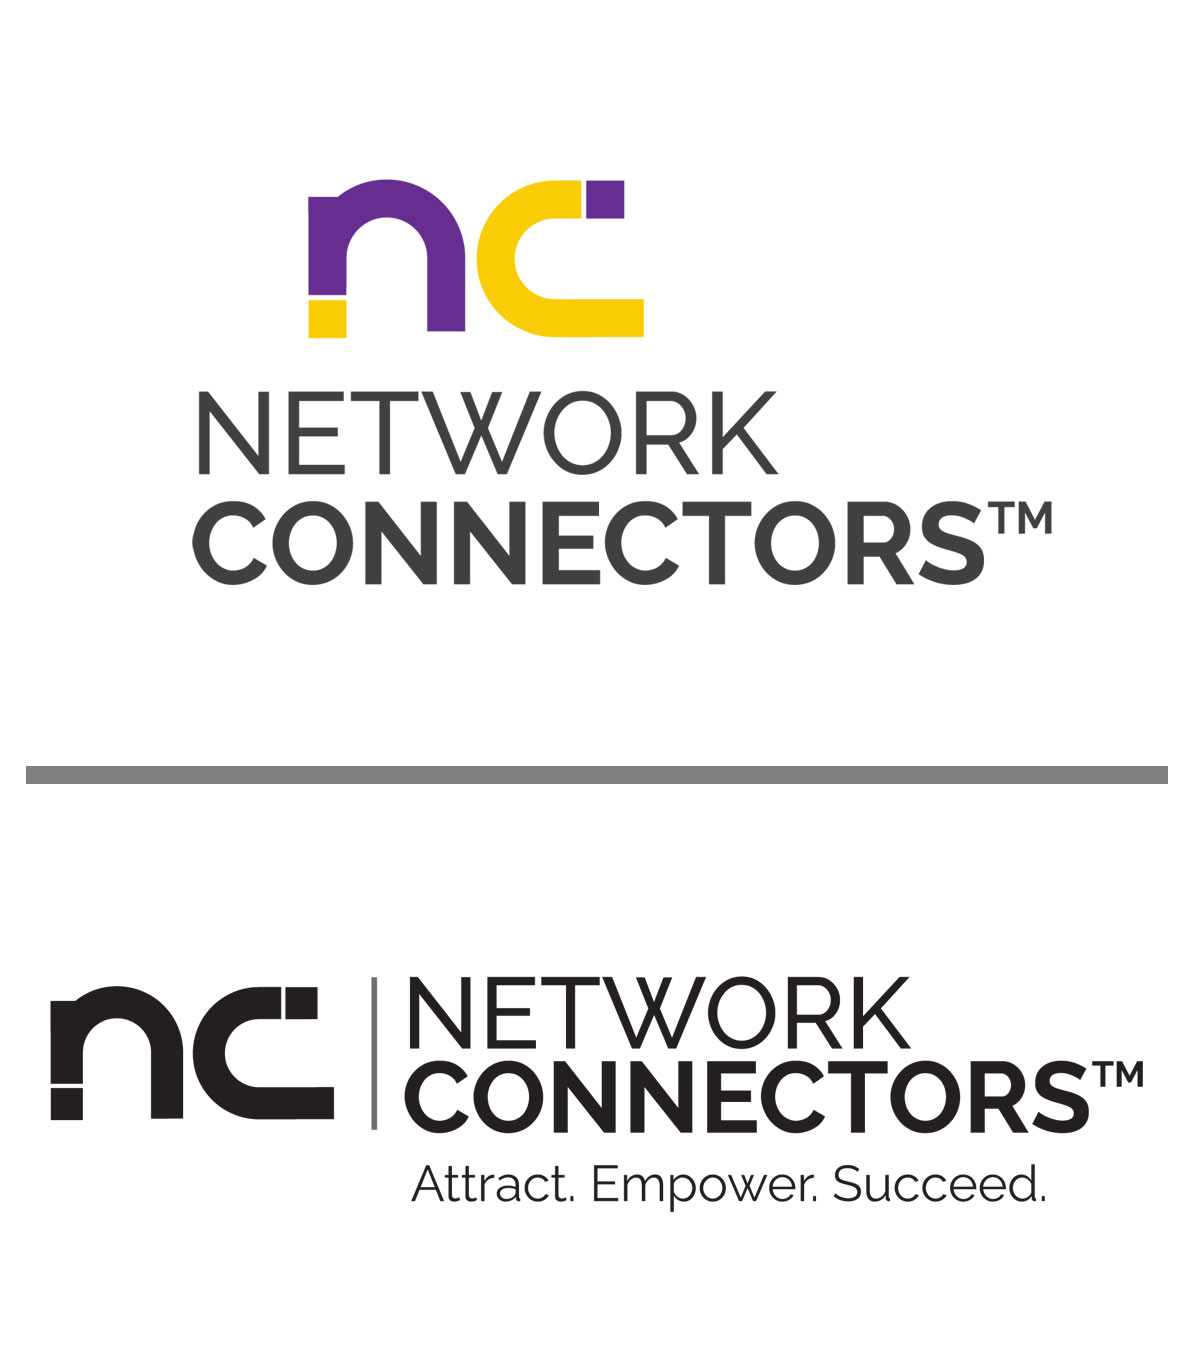 Network Connector Logos